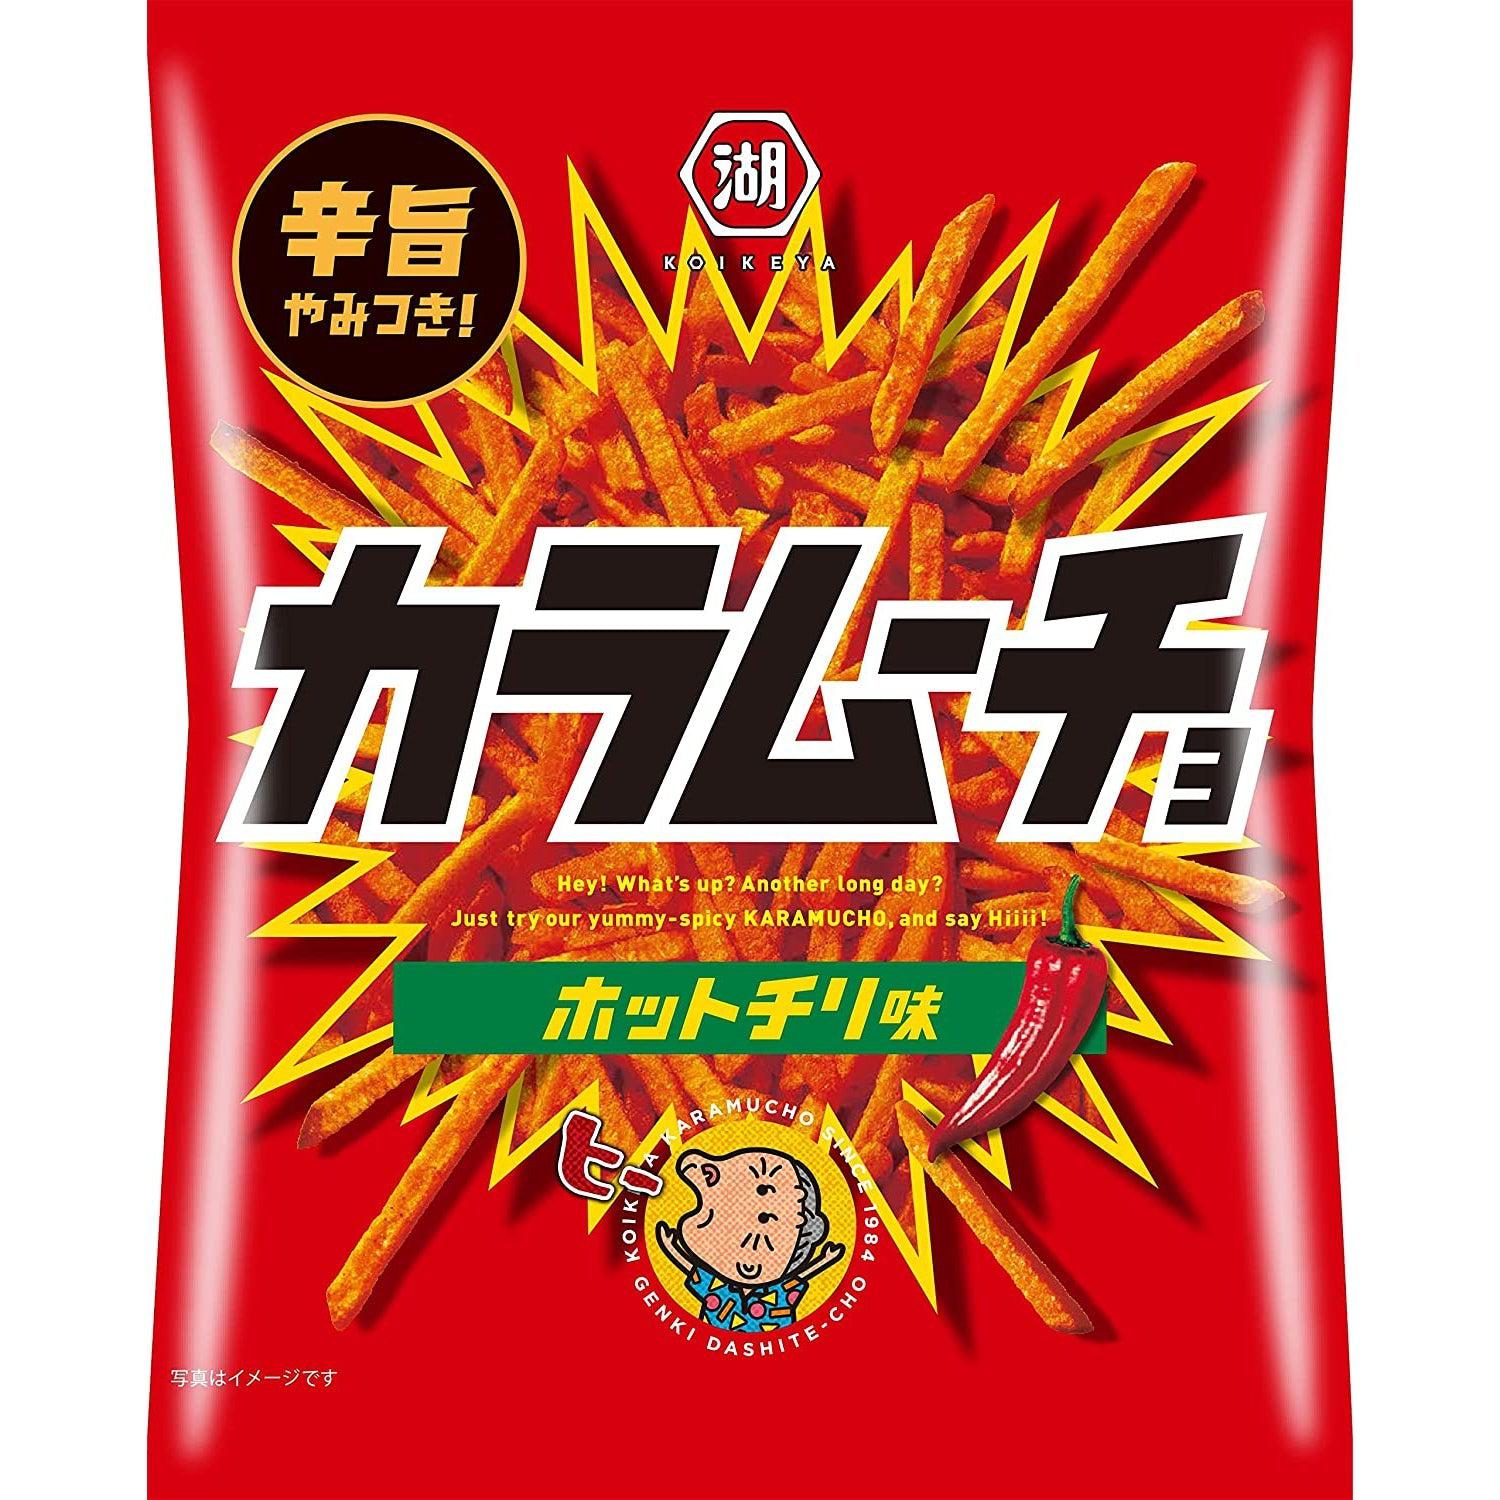 Koikeya Karamucho Hot Chili Spicy Potato Sticks 97g (Pack of 3 Bags)